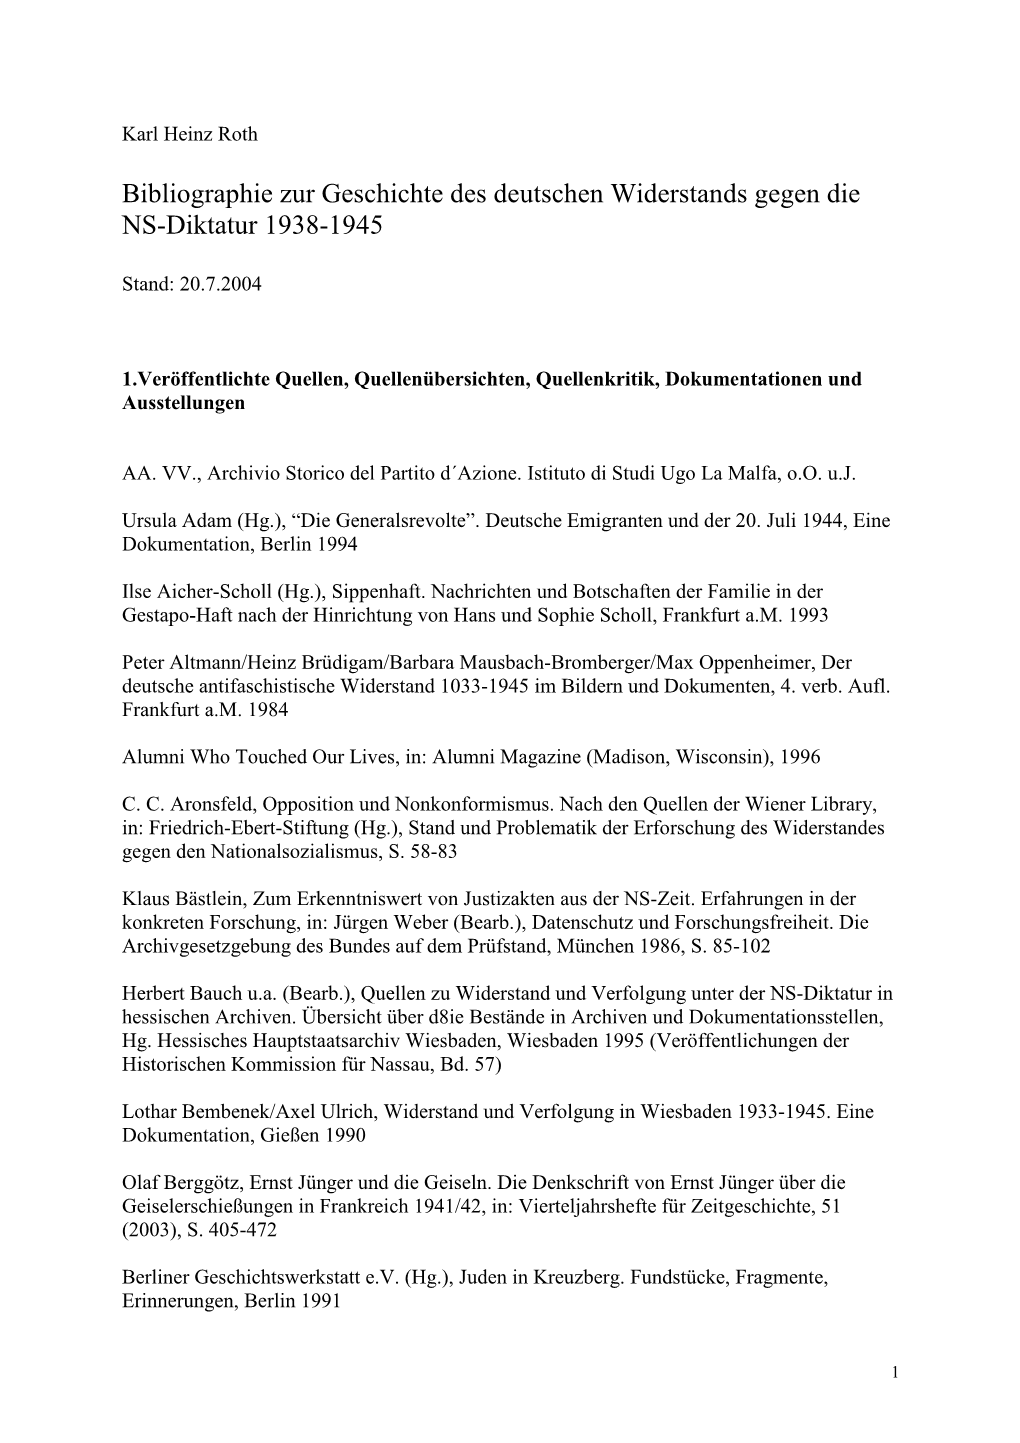 Bibliographie Zur Geschichte Des Deutschen Widerstands Gegen Die NS-Diktatur 1938-1945